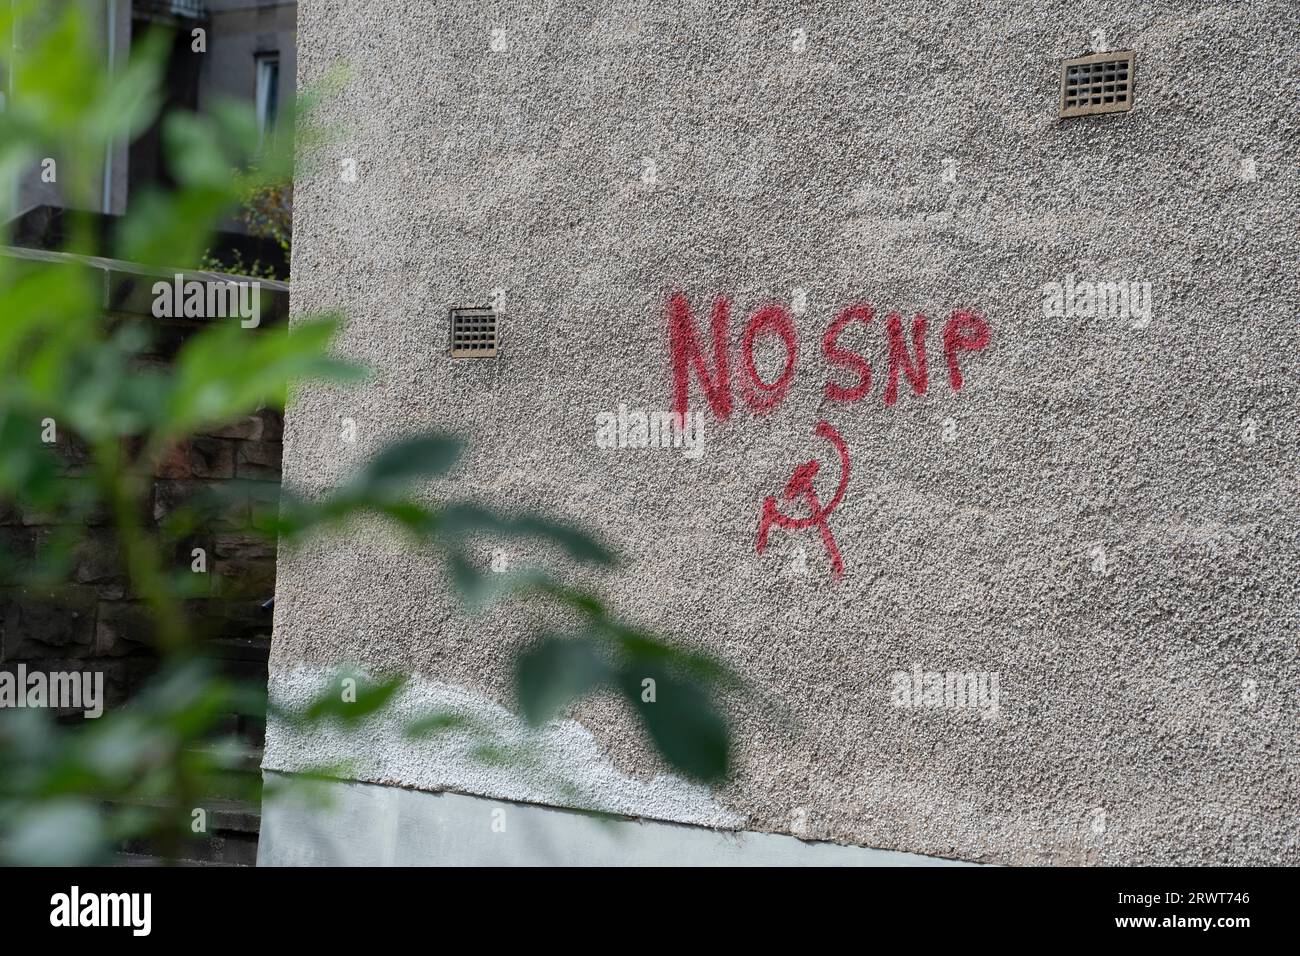 Spray anti-SNP graffiti verniciato su un blocco di alloggi a Edimburgo, Scozia, Regno Unito Foto Stock